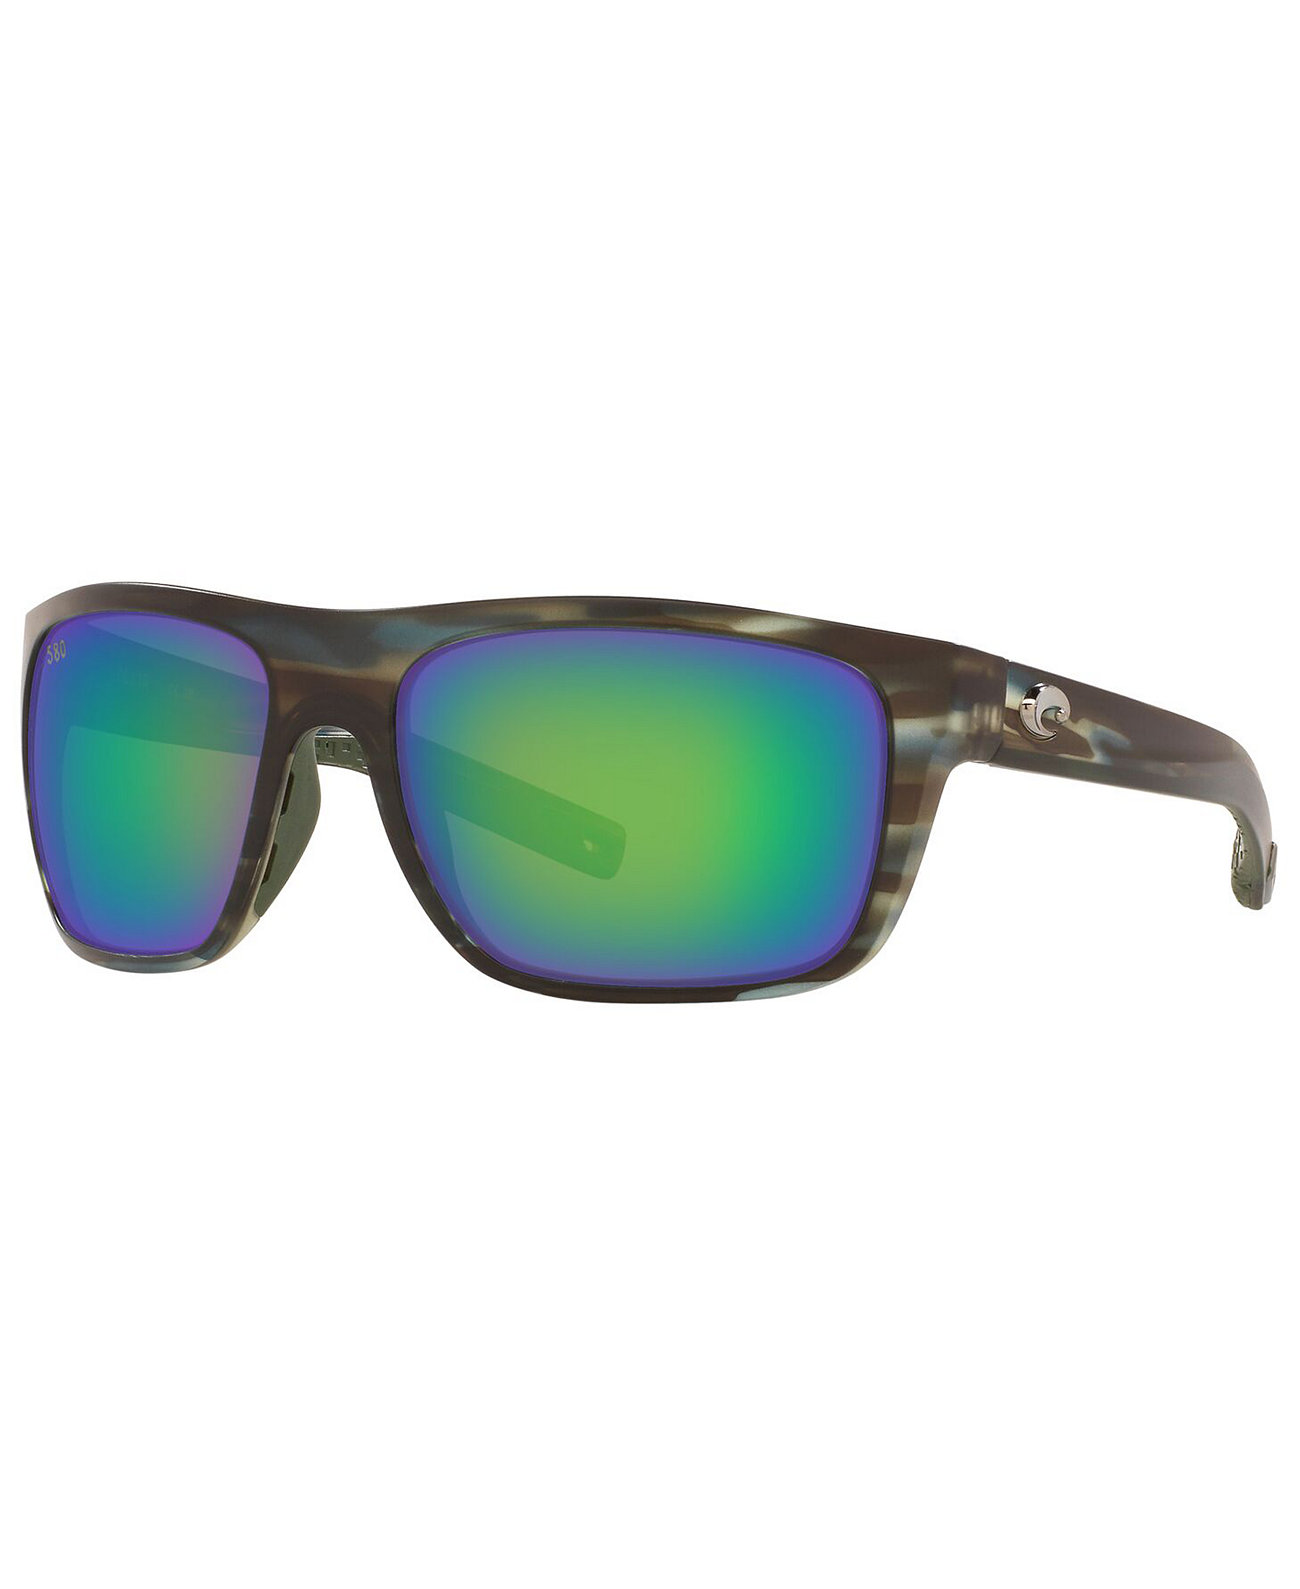 Поляризованные солнцезащитные очки Broadbill COSTA DEL MAR